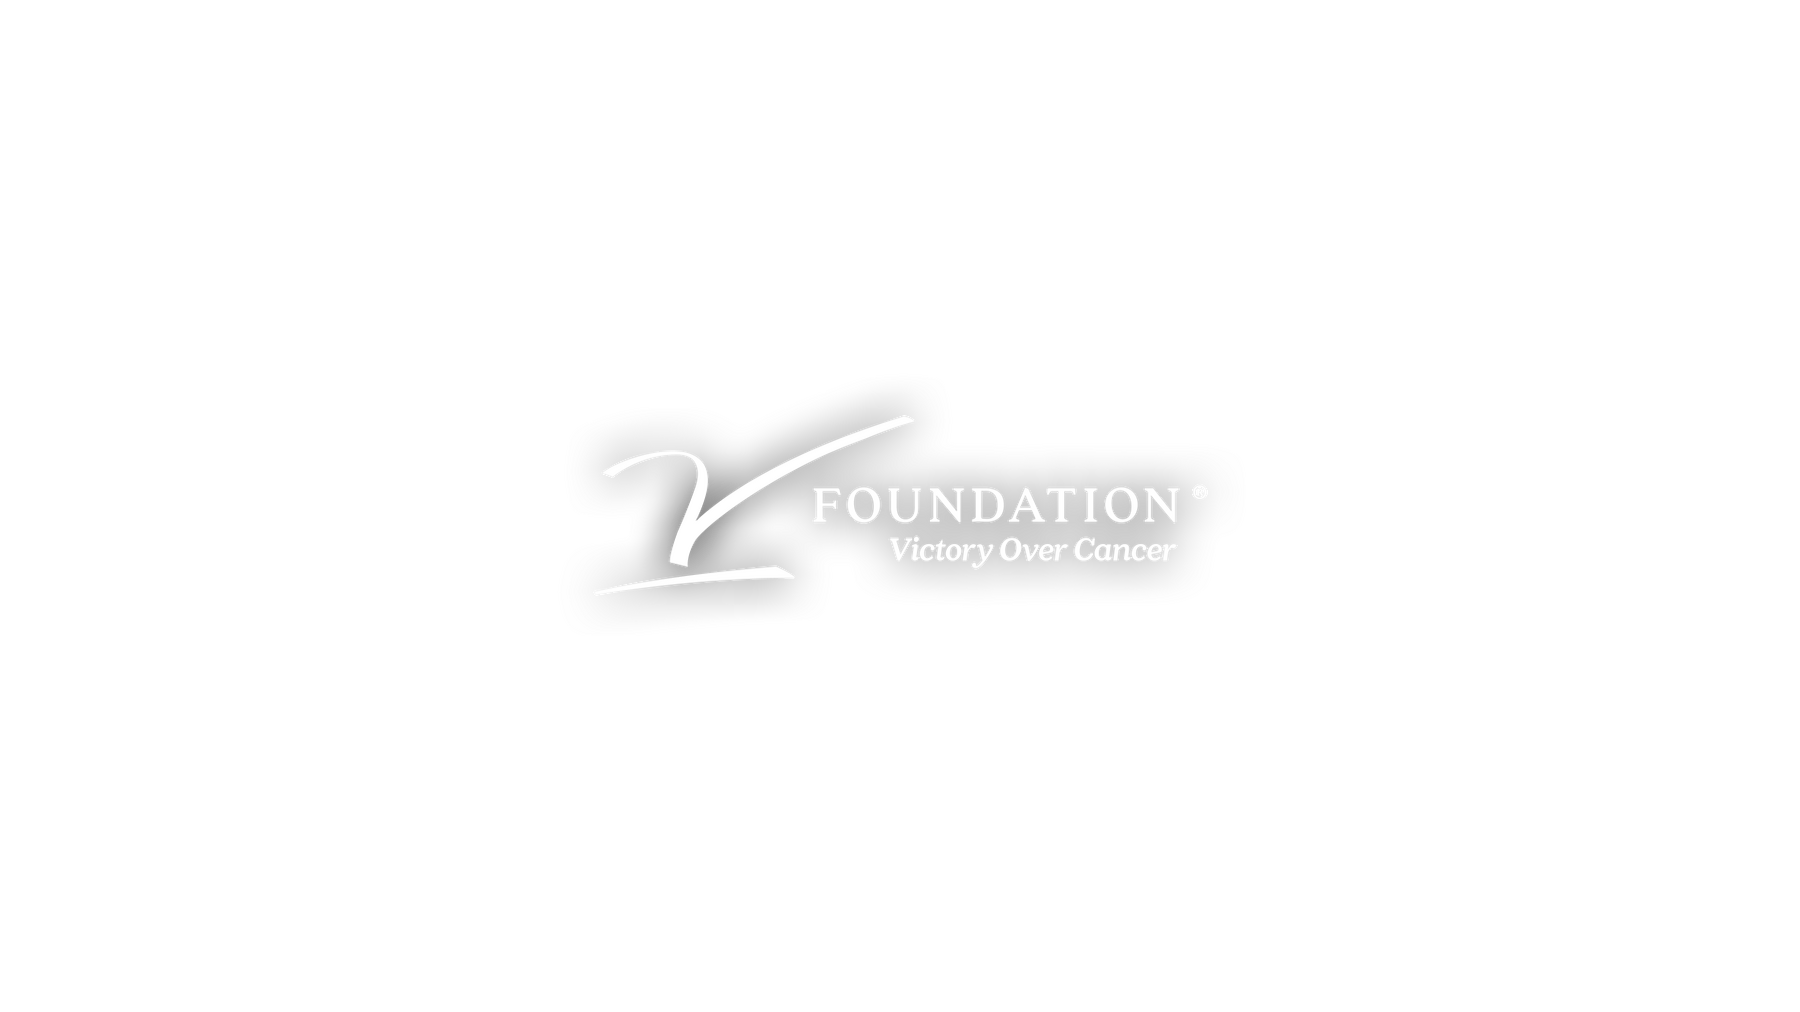 V foundation logo center